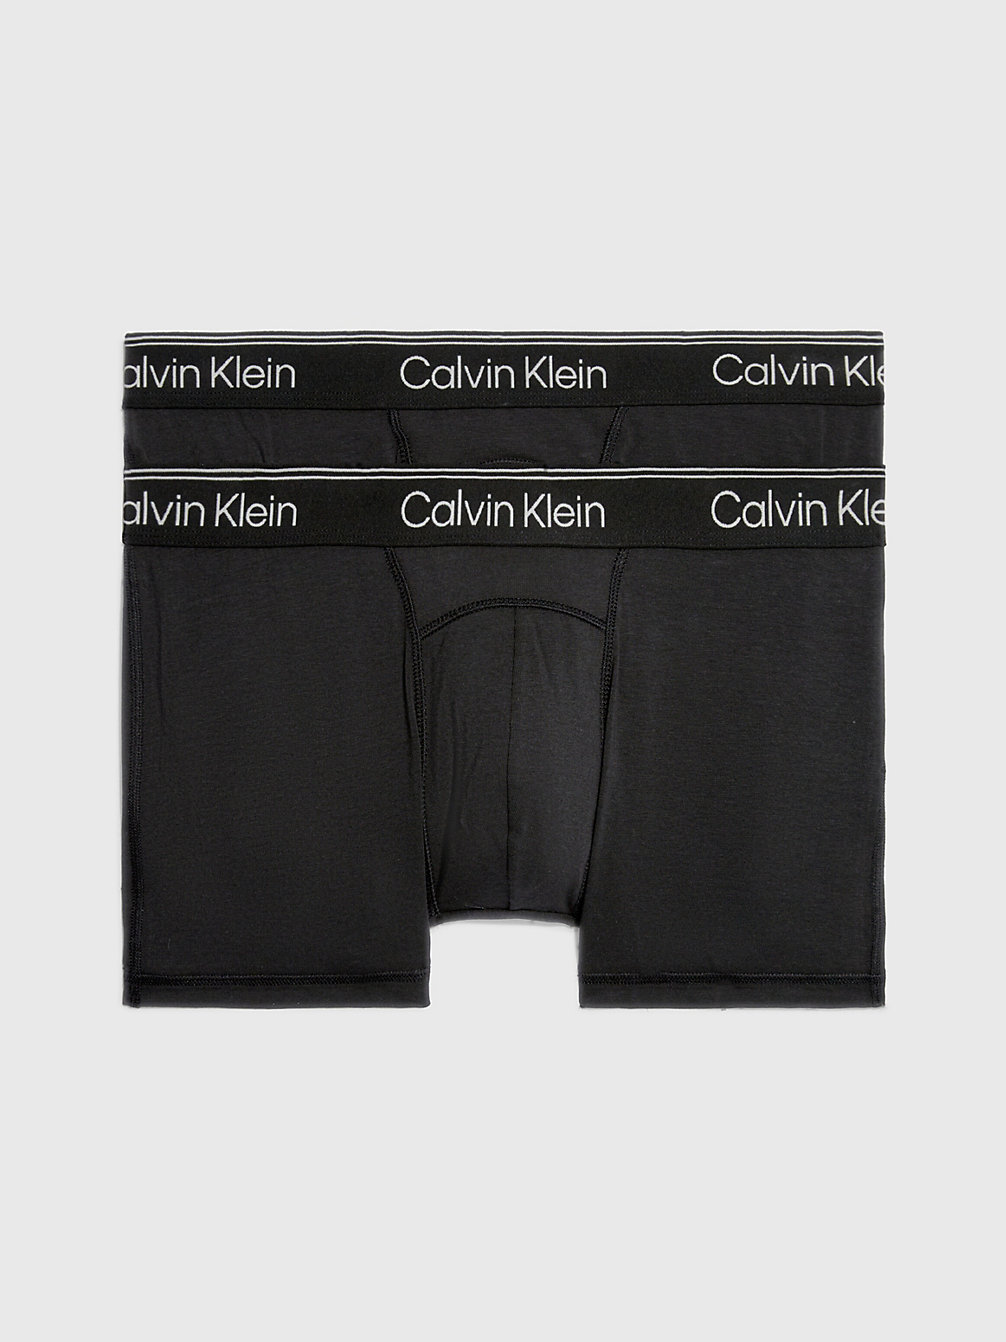 BLACK/BLACK Lot De 2 Boxers - Athletic Cotton undefined hommes Calvin Klein